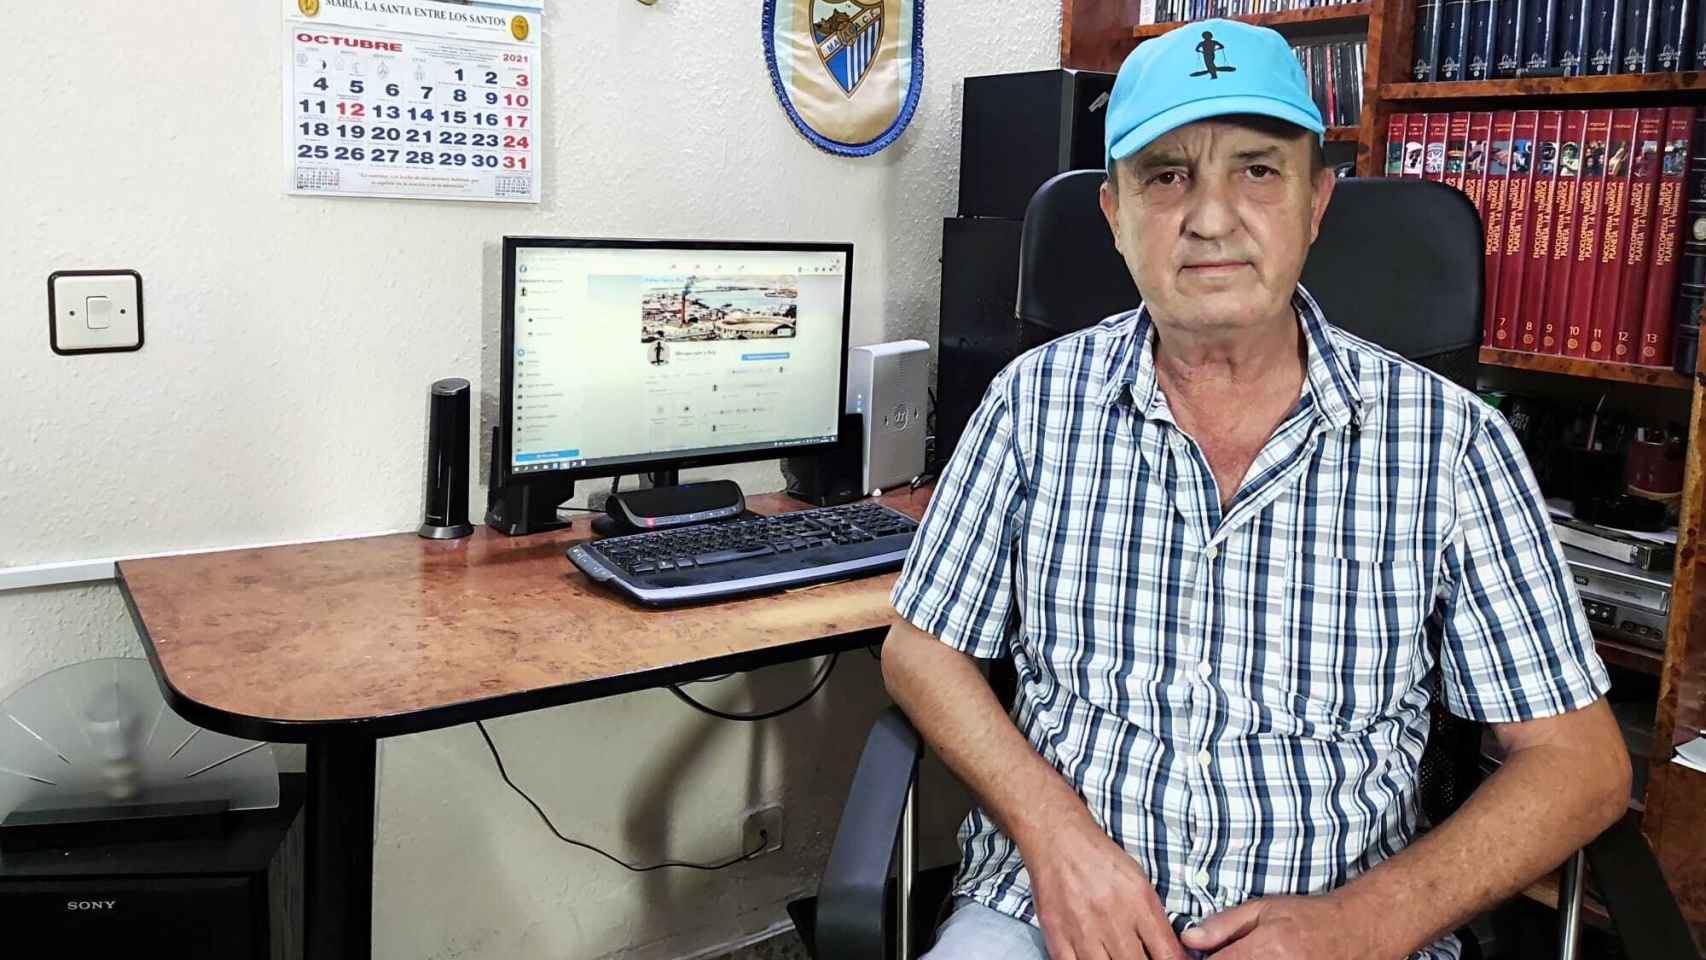 Manuel Olea, en una imagen frente al ordenador con la página Málaga ayer y hoy abierta.